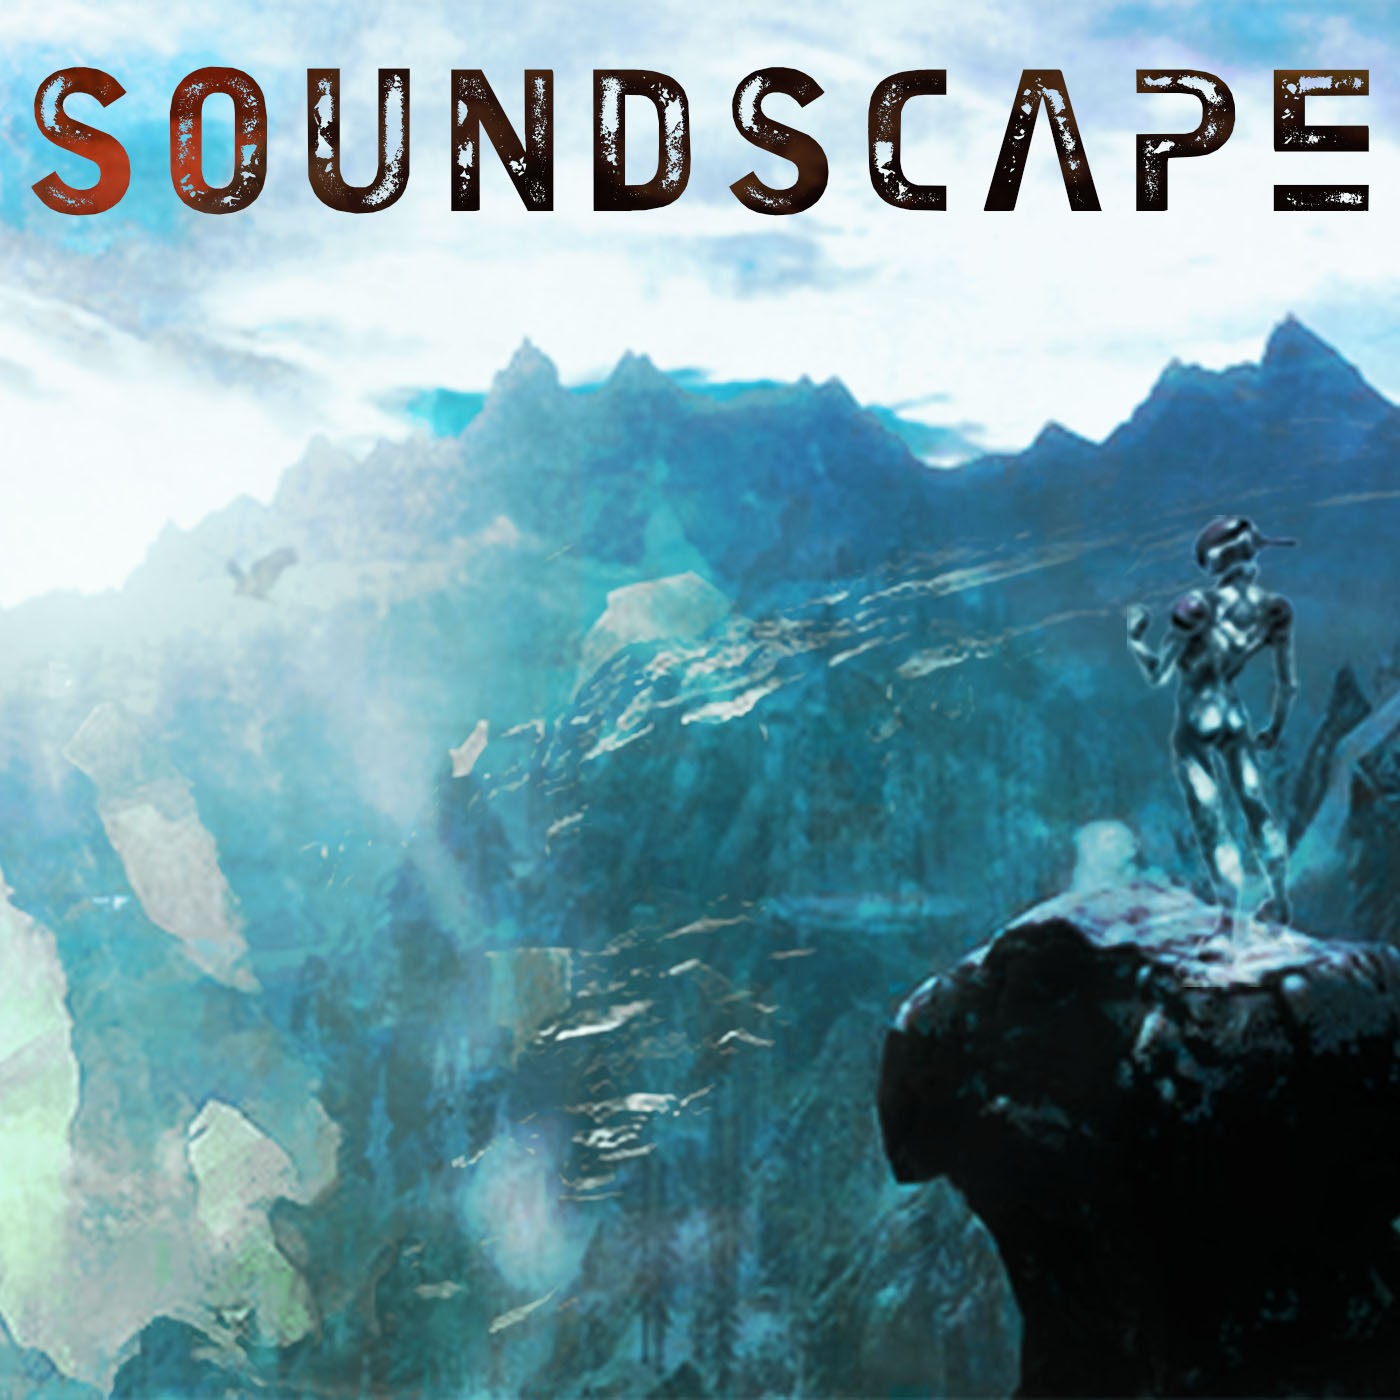 Soundscape 2.86 Blast Off